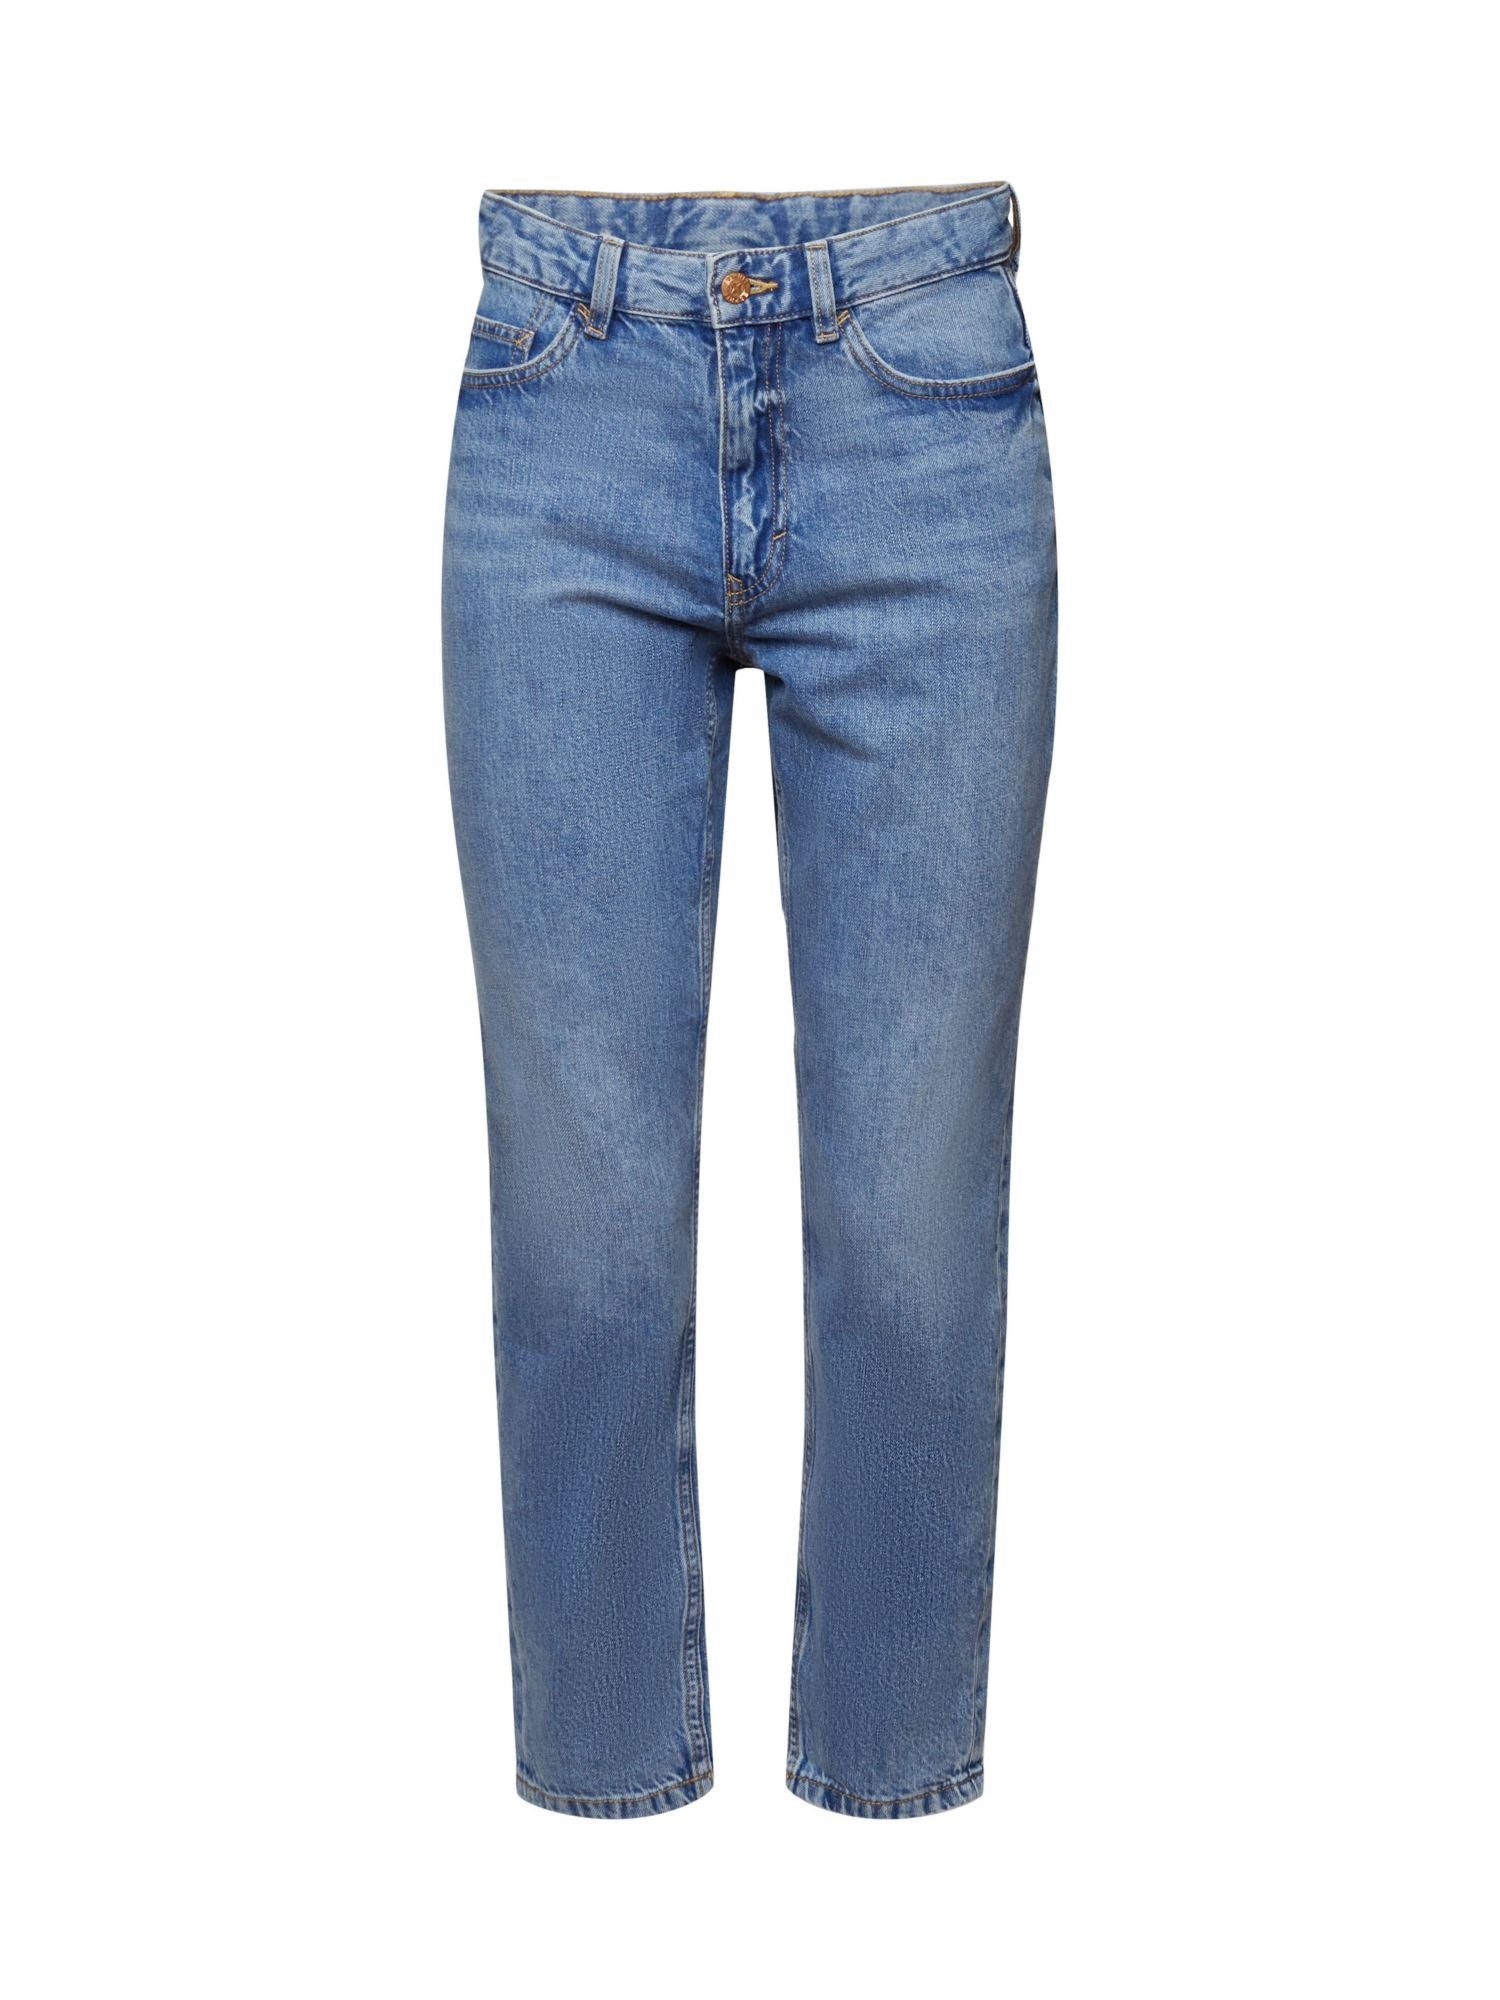 edc by Esprit 7/8-Hose Mom-Jeans mit hohem Bund, Baumwollmix, Hohe Taille,  nach unten hin schmaler werdendes Bein